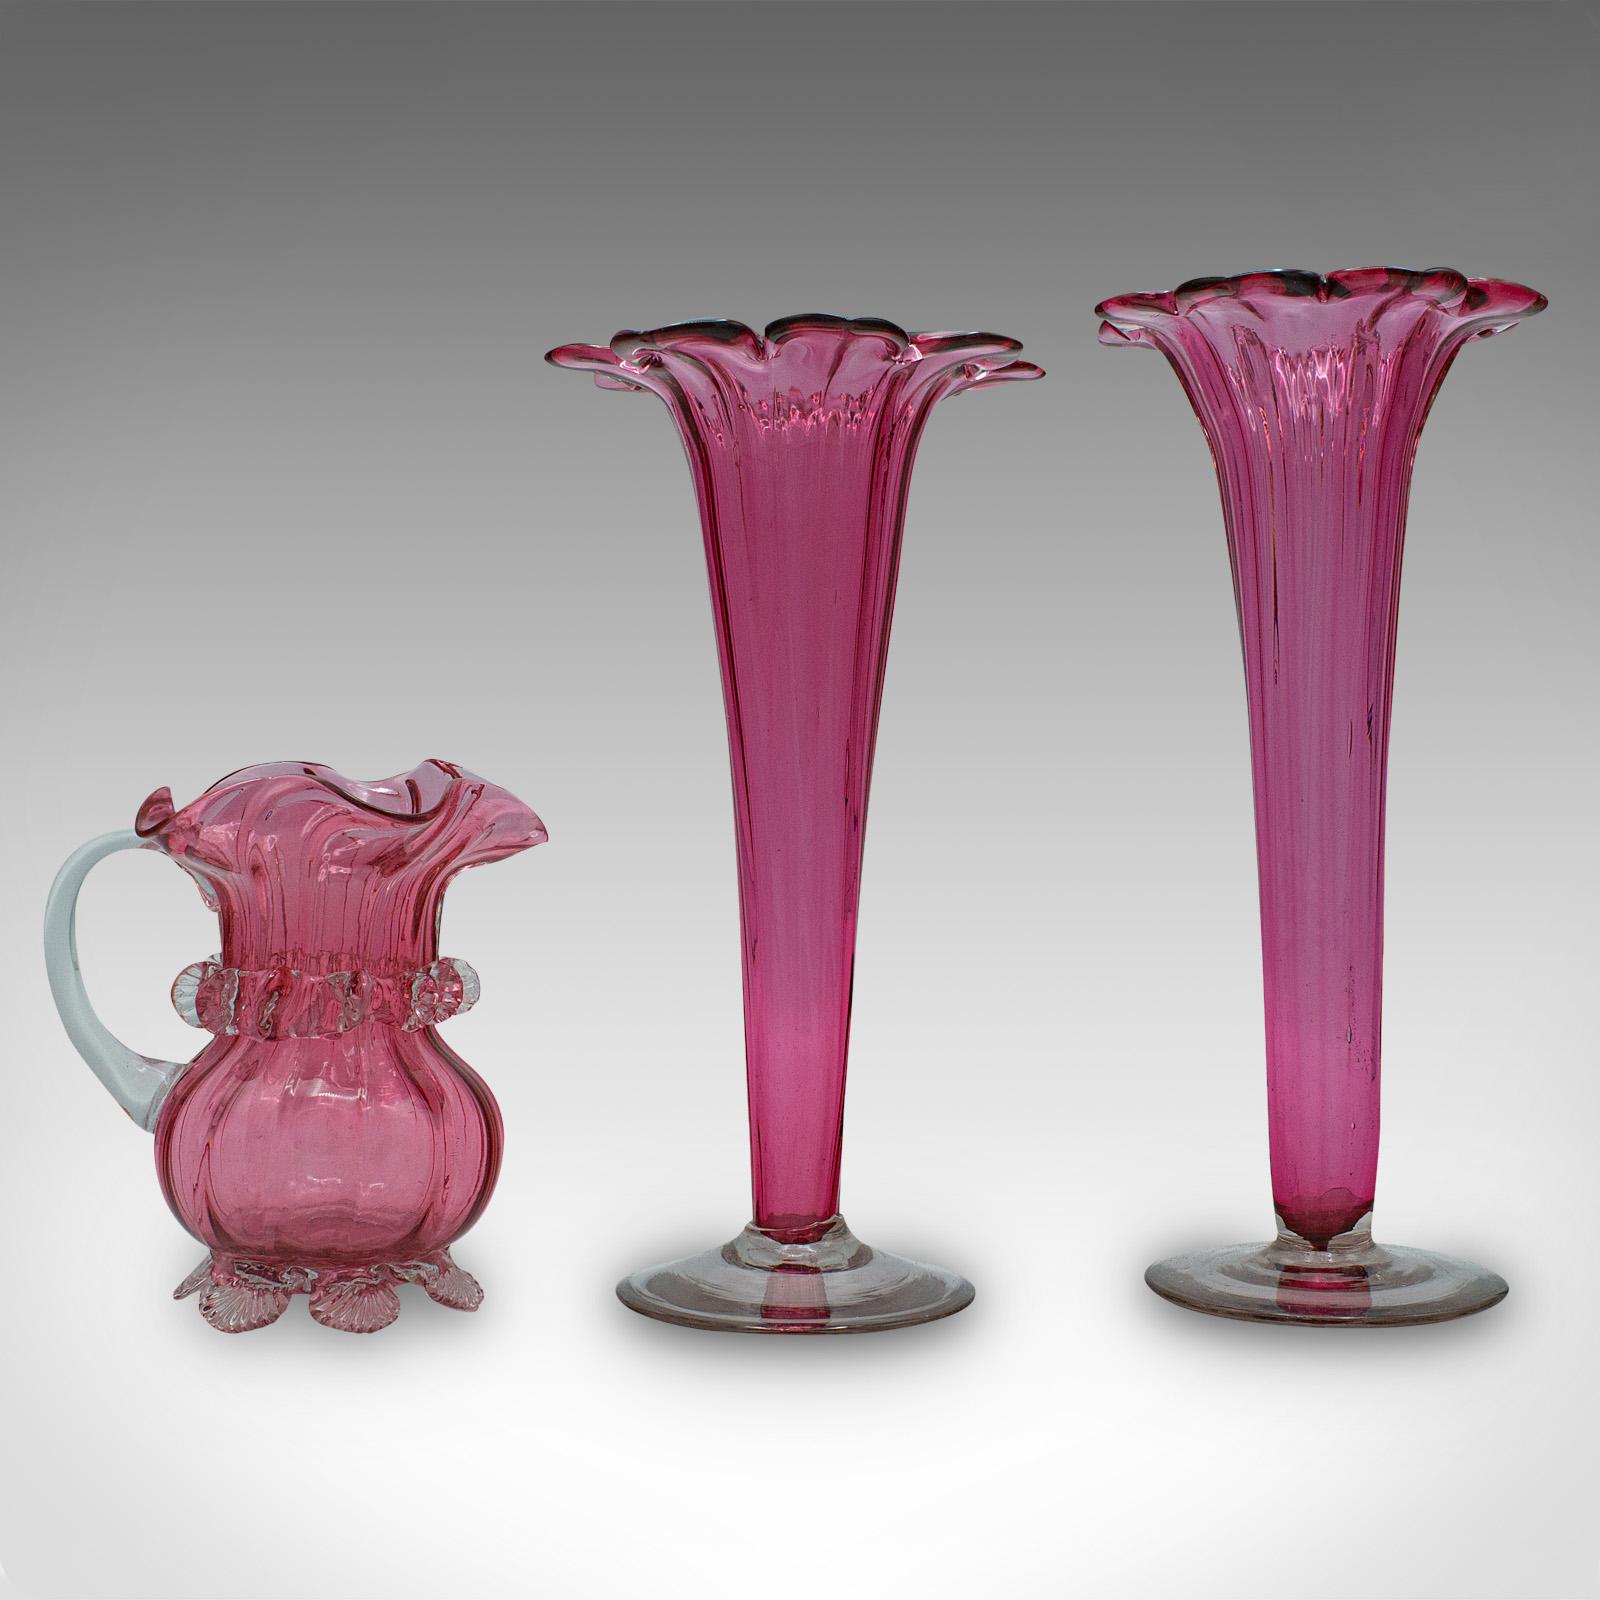 Il s'agit d'un ensemble de vases à pied en verre de canneberge vintage. Un pichet anglais décoratif en forme de fleur, datant du début du 20e siècle, vers 1930.

Verre vibrant de charme aux formes délicieusement cannelées
Présentant une patine